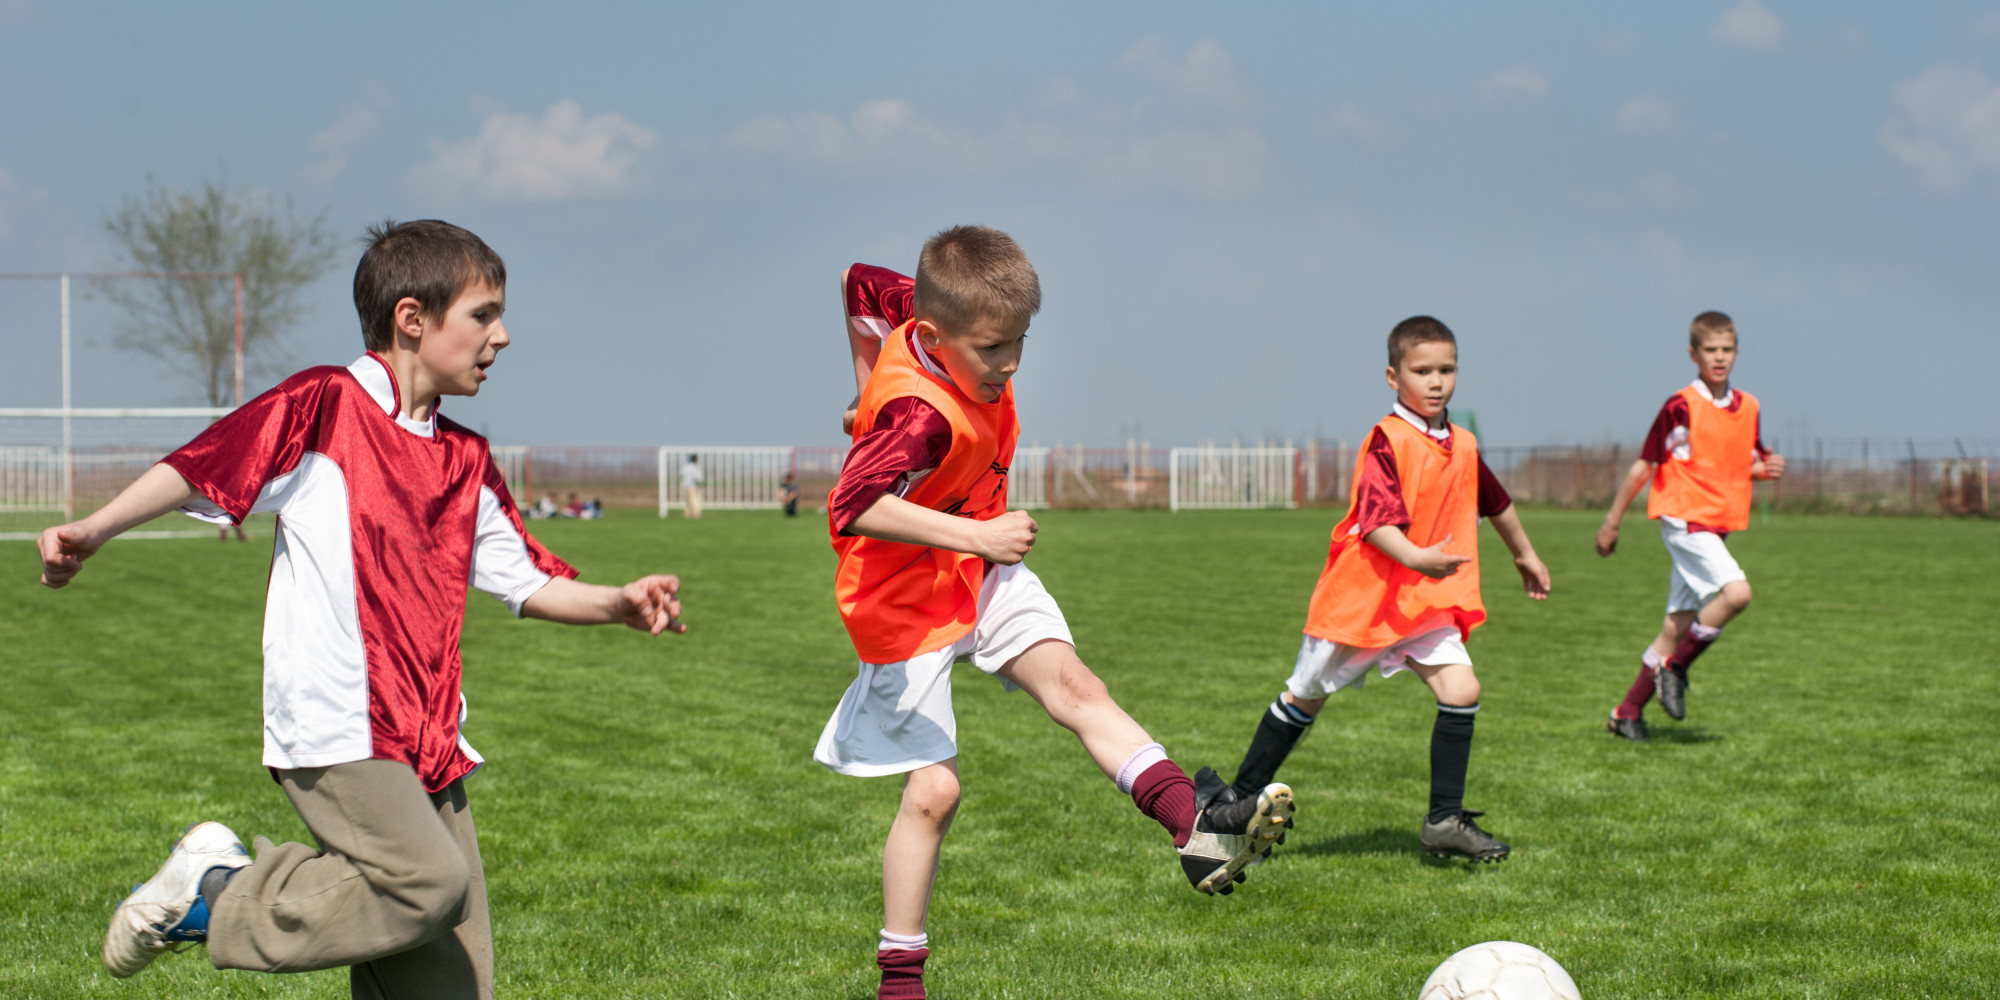 They play football well. Дети играют в футбол. Мальчик играет в футбол. Мальчишки играют в футбол. Парень играет в футбол.